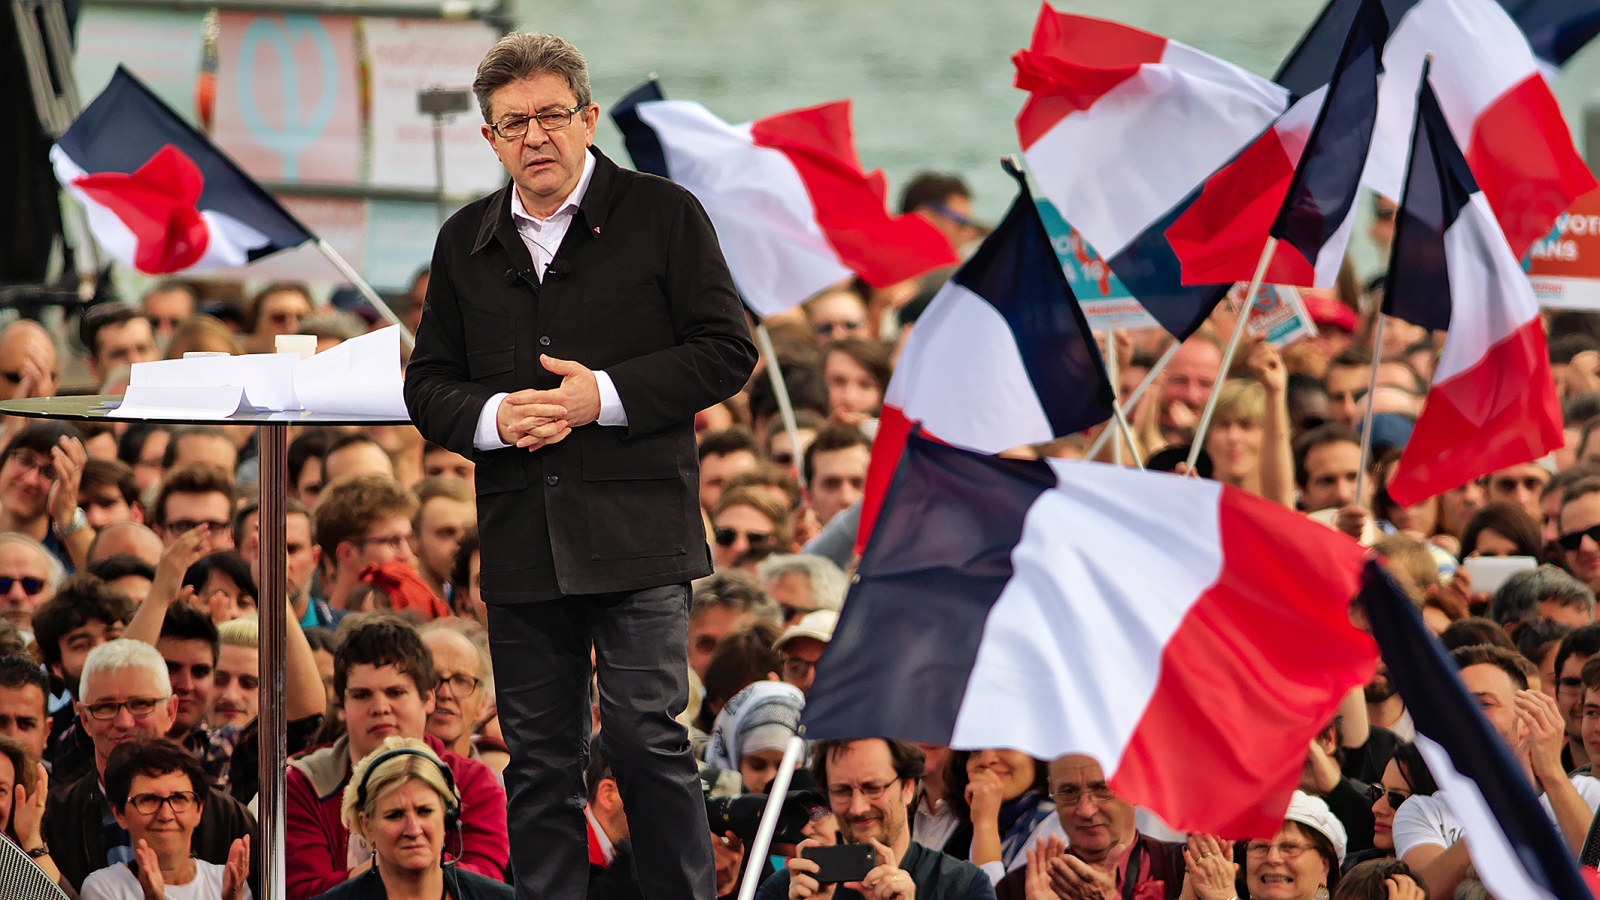 Jean-Luc Mélenchon, kandidat for partiet La France insoumise.